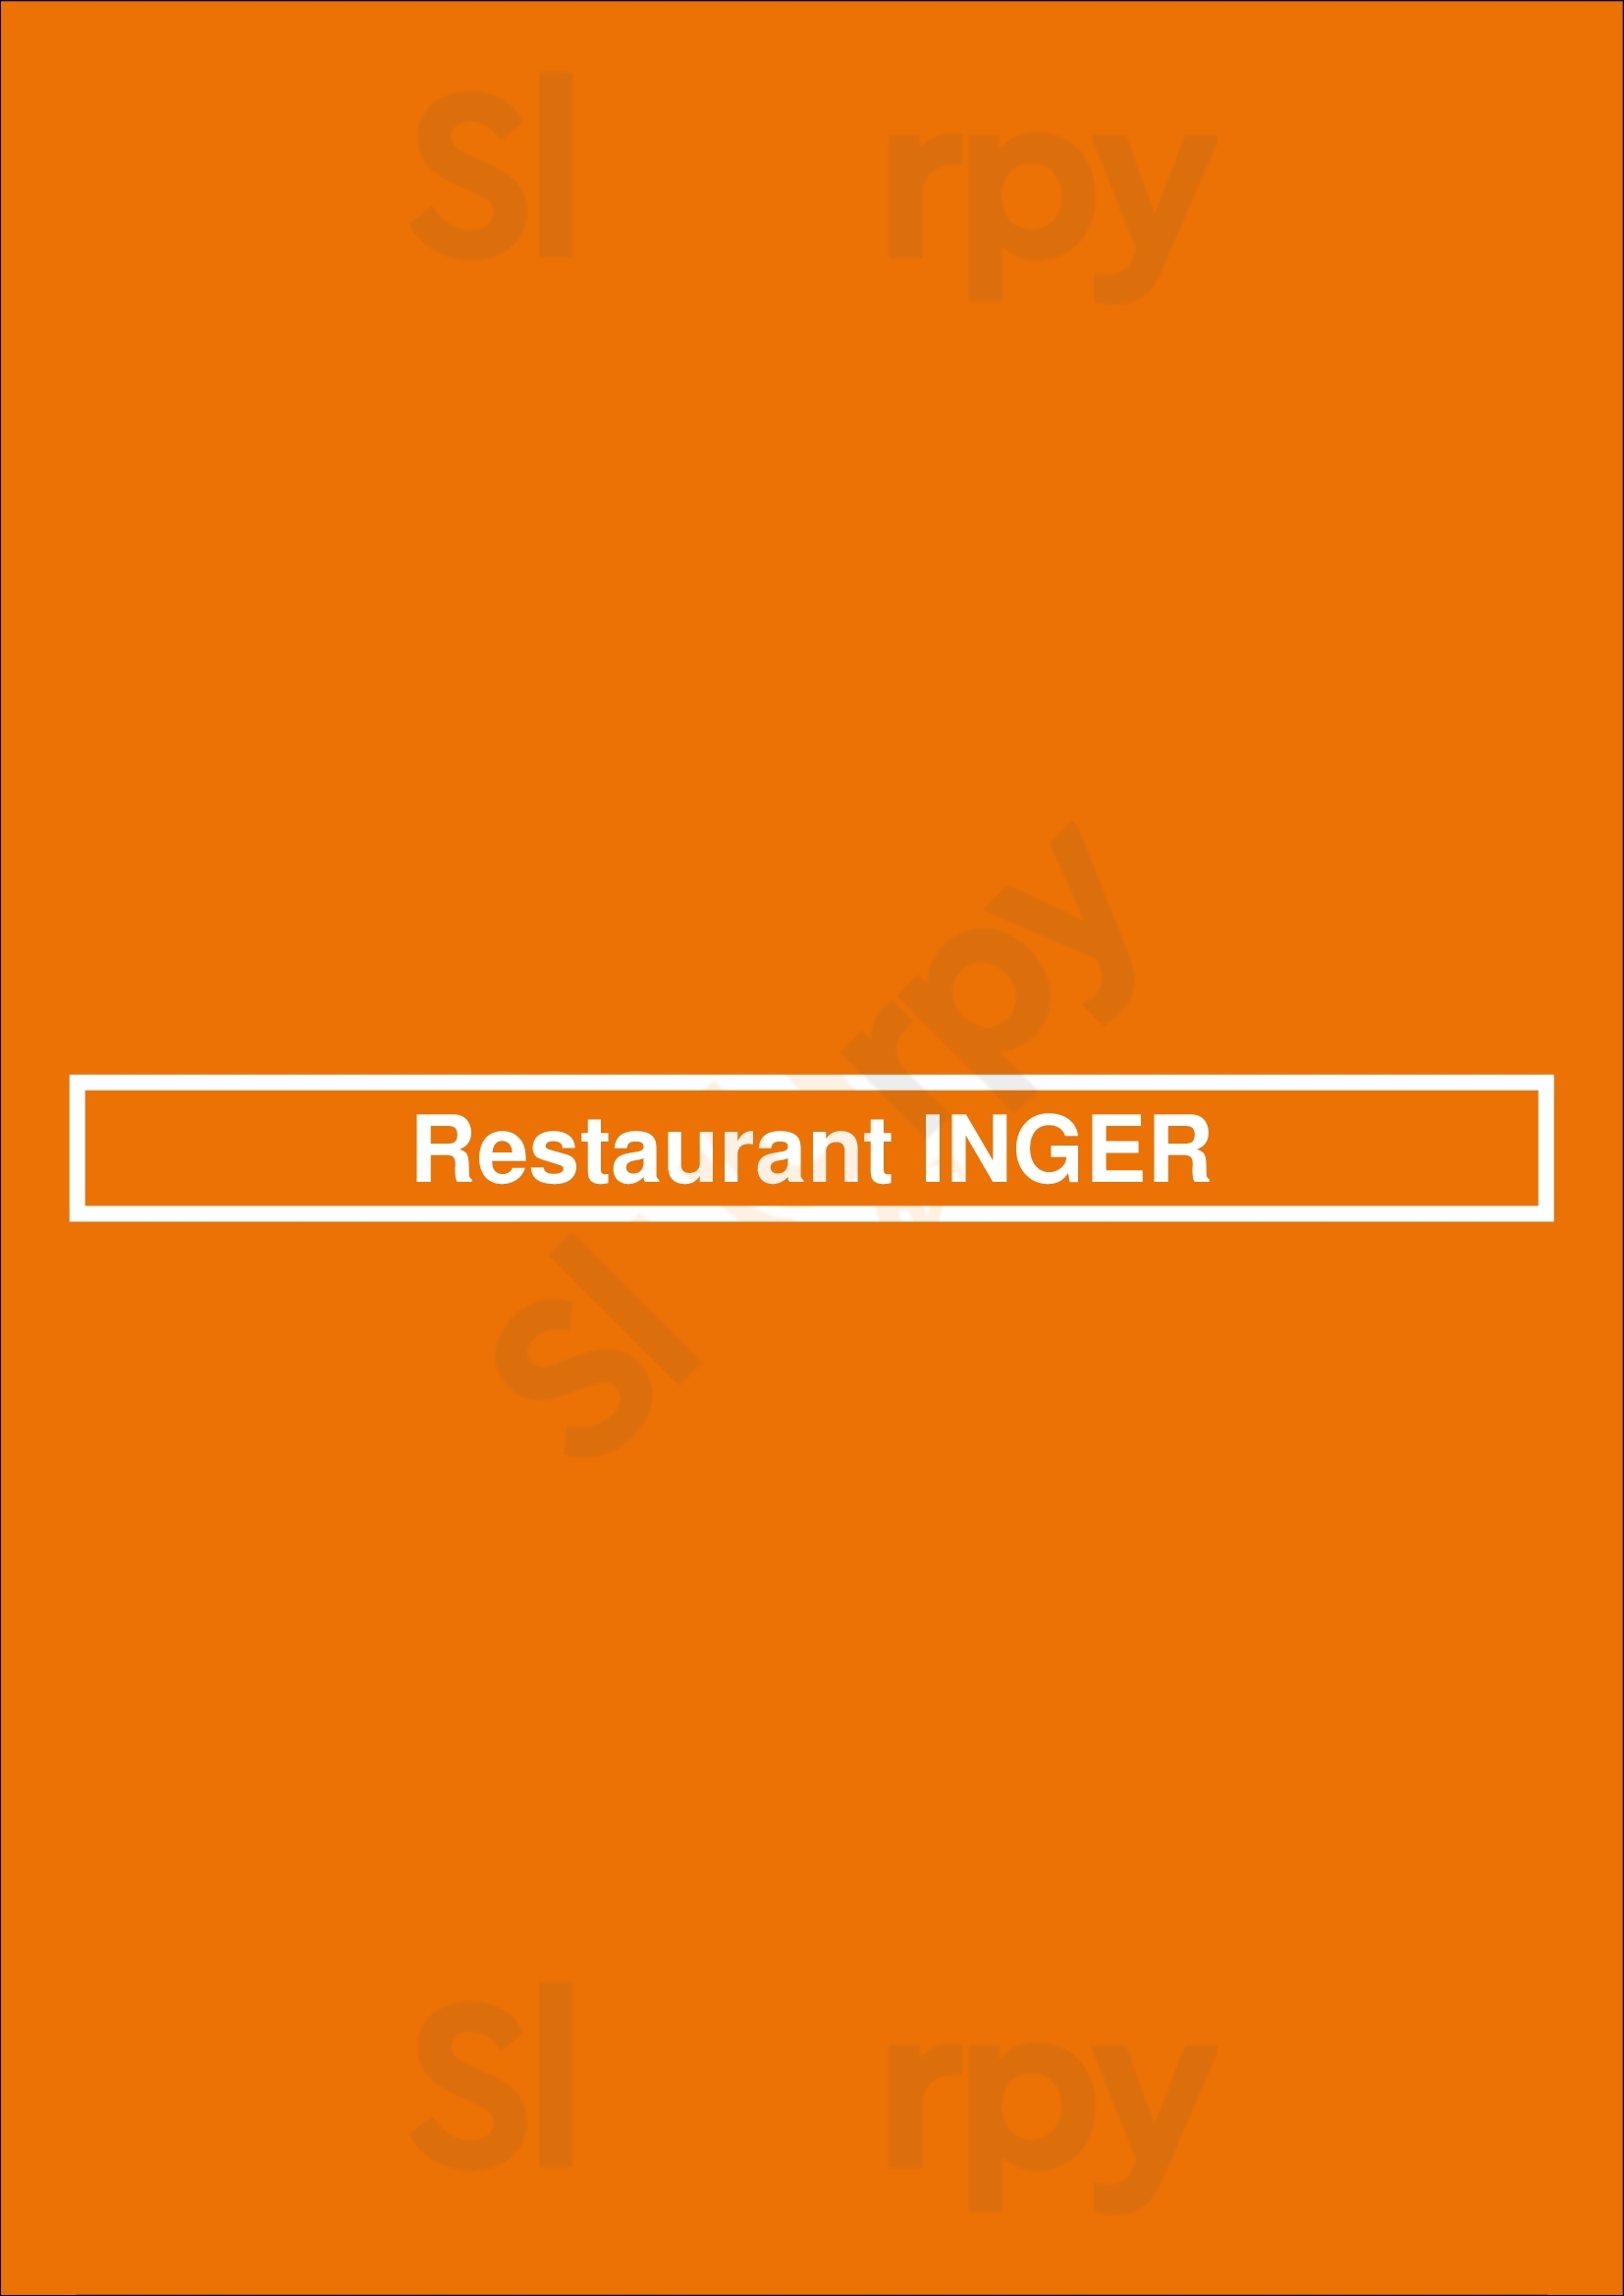 Restaurant Inger Beverwijk Menu - 1